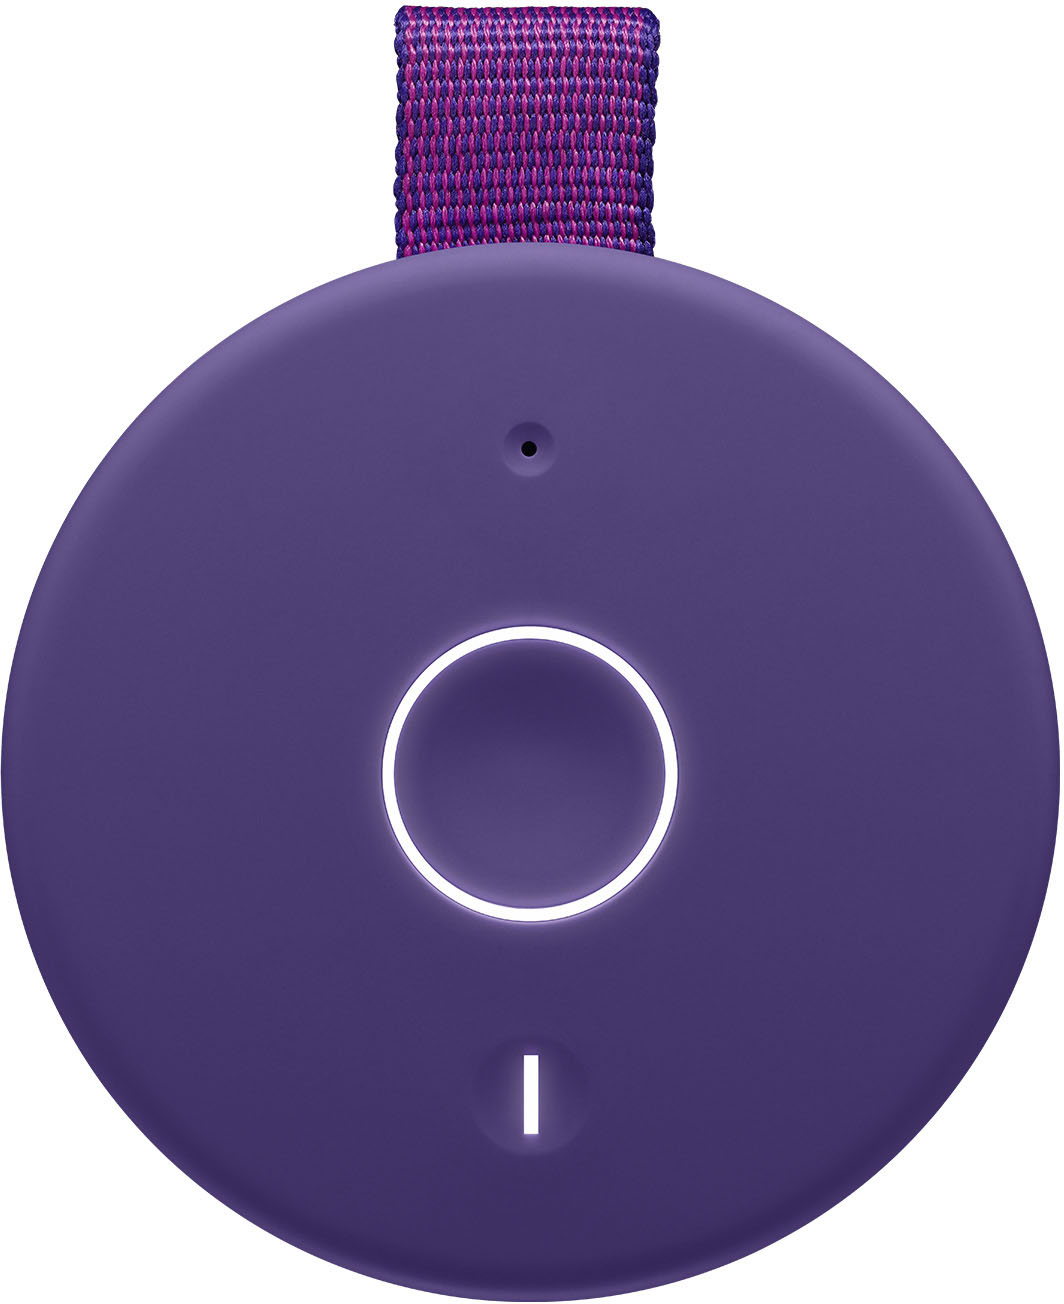 Ultimate Ears MEGABOOM 3 Portable Wireless Bluetooth Speaker with  Waterproof/Dustproof Design Night Black 984-001390 - Best Buy